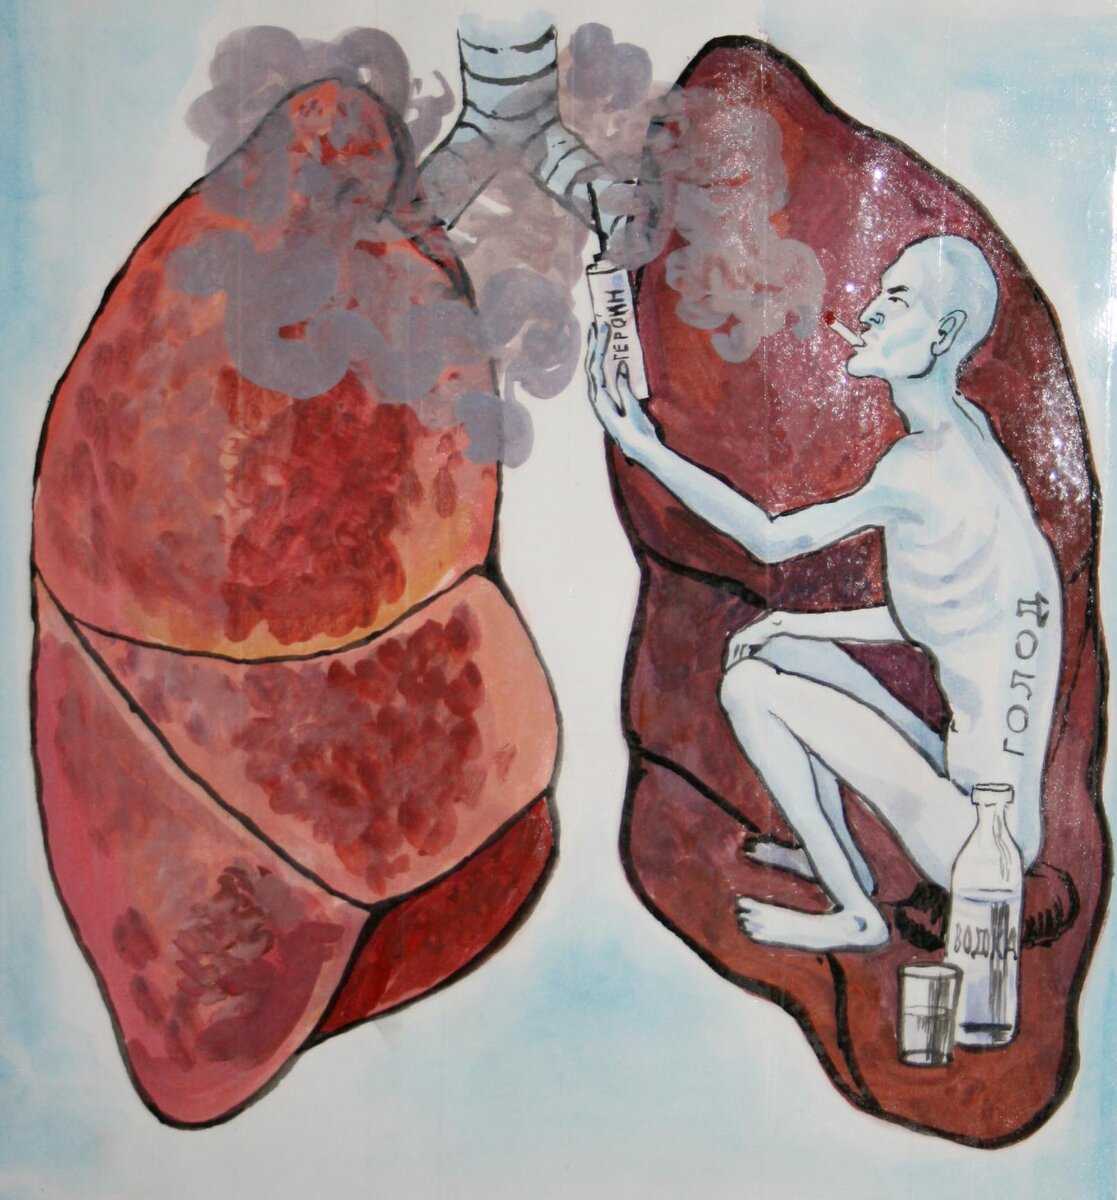 Диагностика туберкулеза: проба манту или диаскинтест